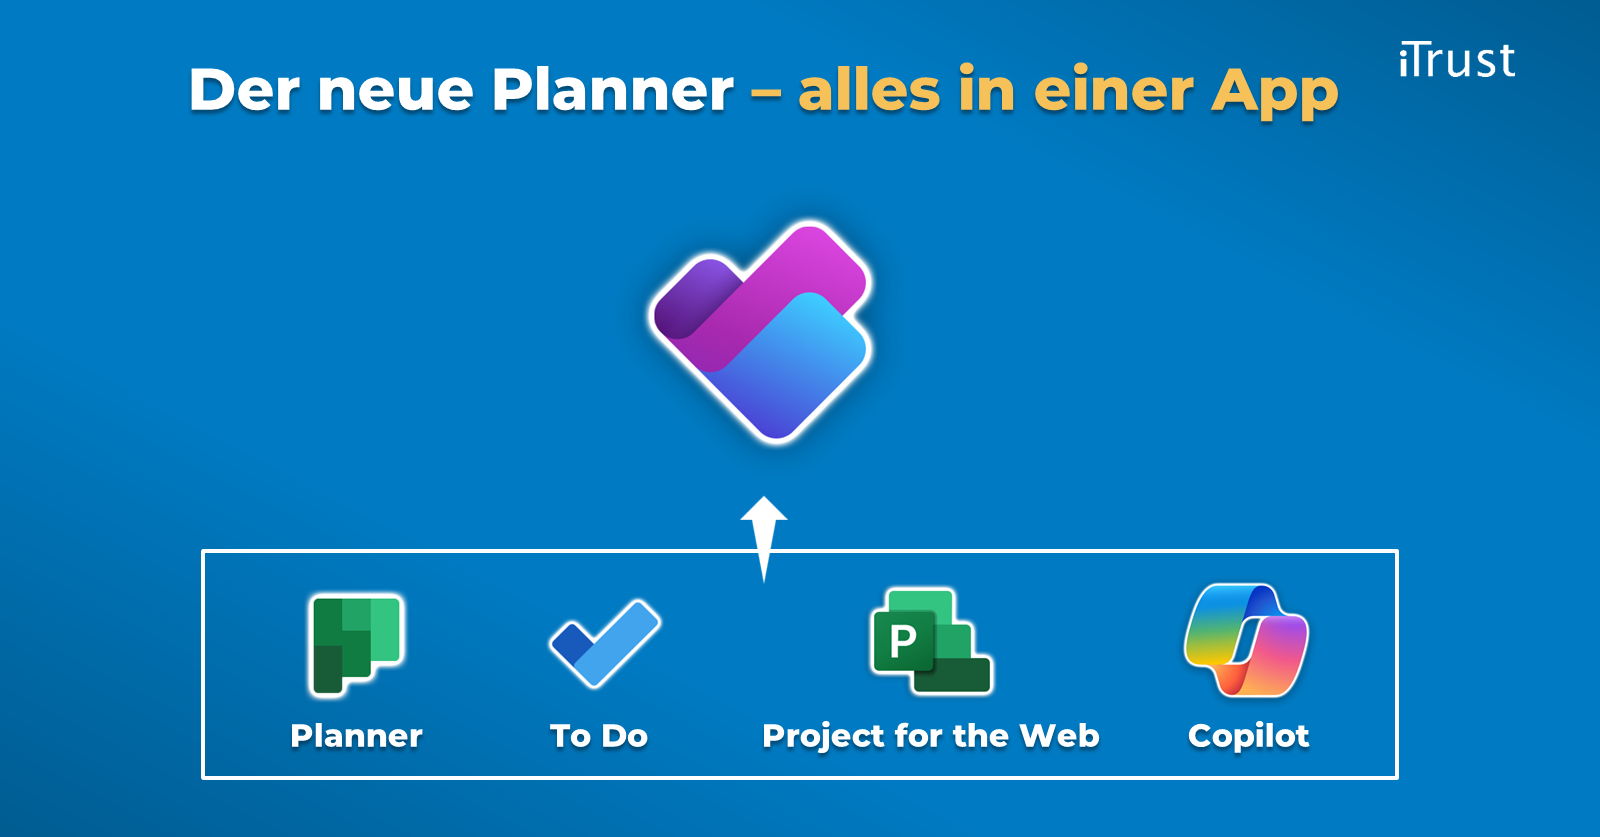 Der neue Microsoft Planner - alles in einer App